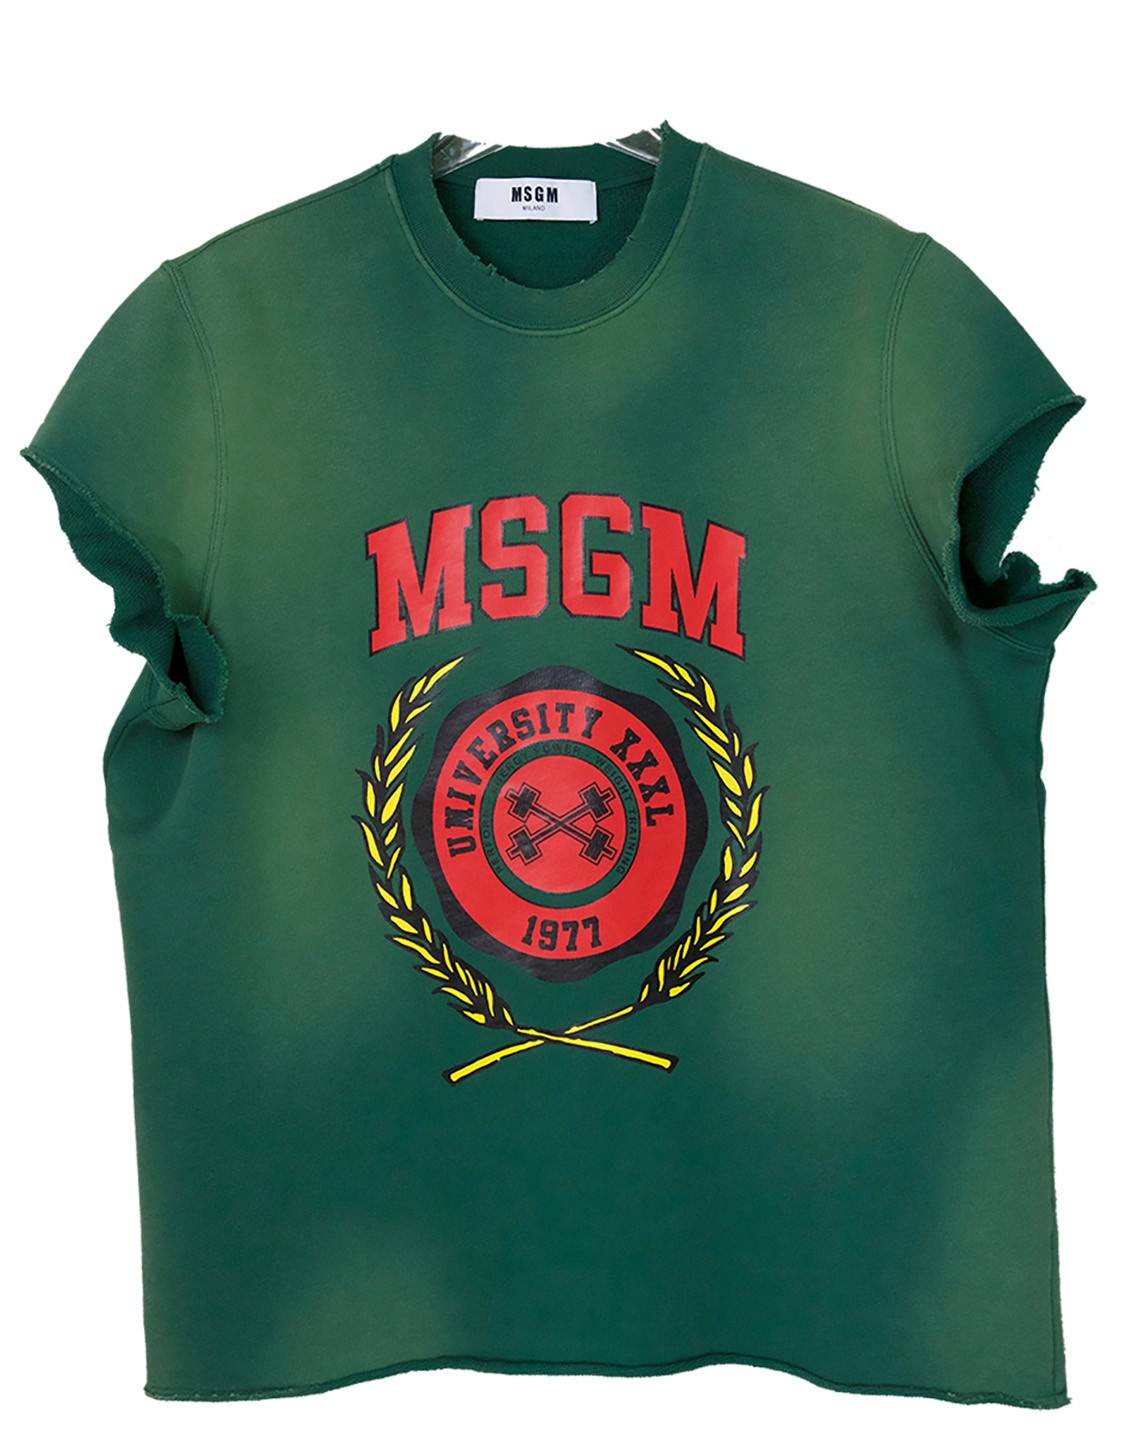 shop MSGM  T-shirts: T-shirt MSGM, tipo felpa, maniche corte strappate, girocollo, verde con sfumature sul giallo, scritta davanti in rosso, modello oversize.

Composizione: 100% cotone. number 866